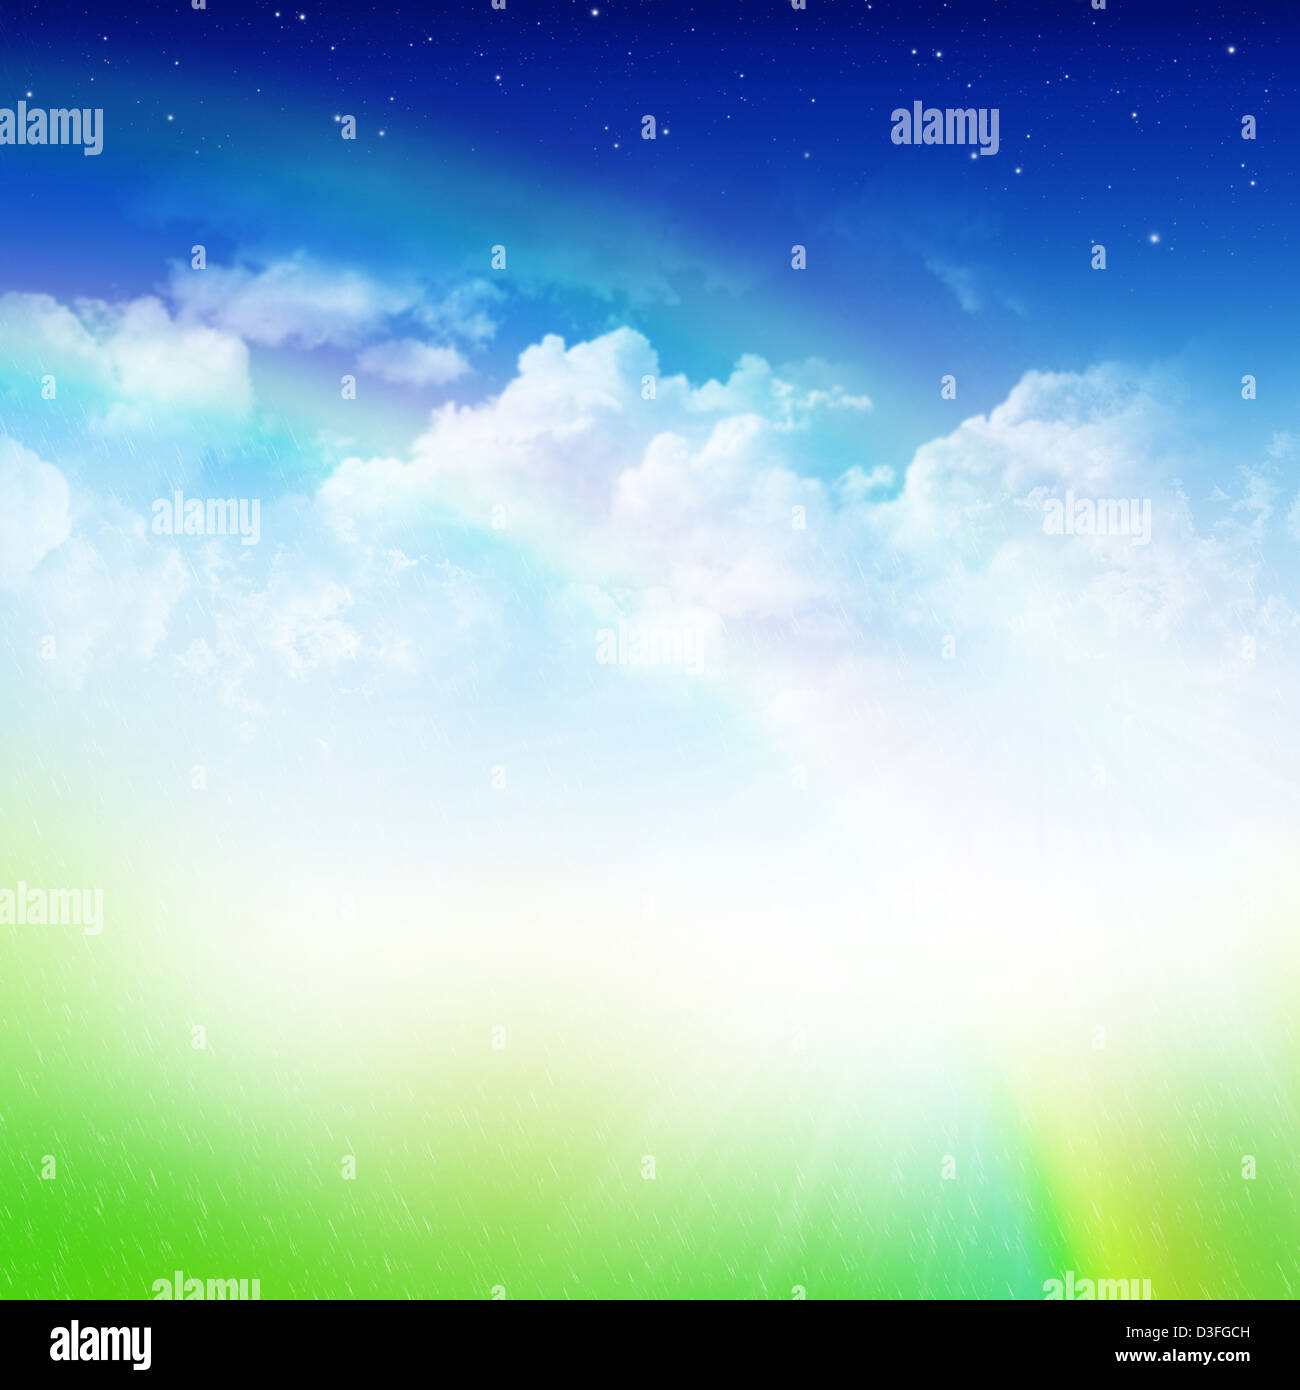 Ciel nuageux Ciel bleu avec des étoiles, double arc-en-ciel, pluie et terrain vert abstract background Banque D'Images